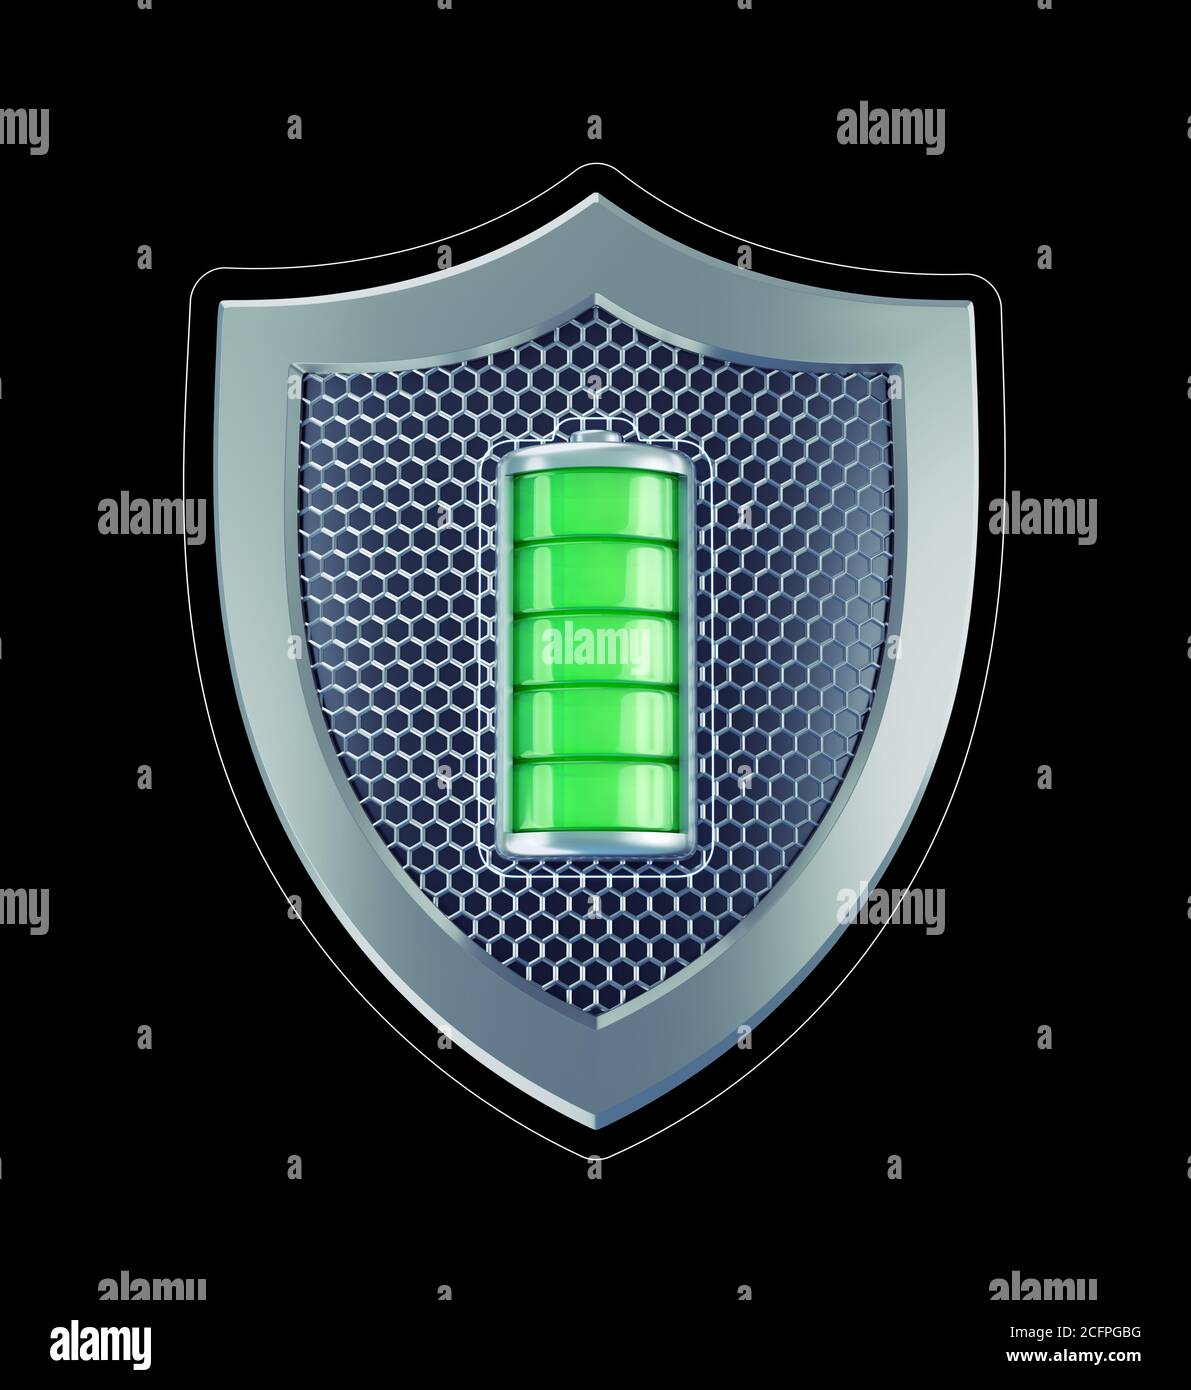 Battery Safety Shield Stock Photo